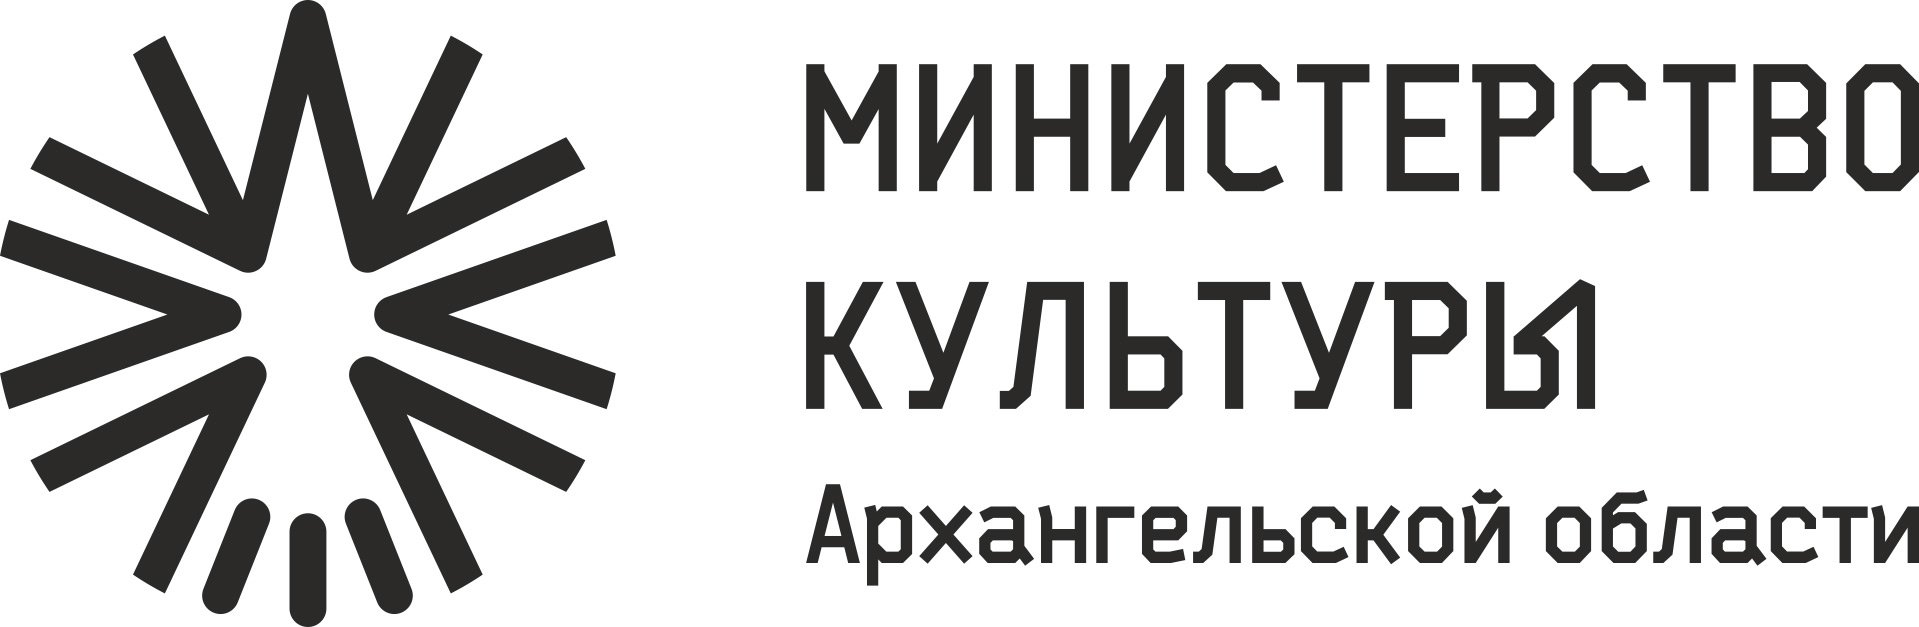 Министерство культуры Архангельской области